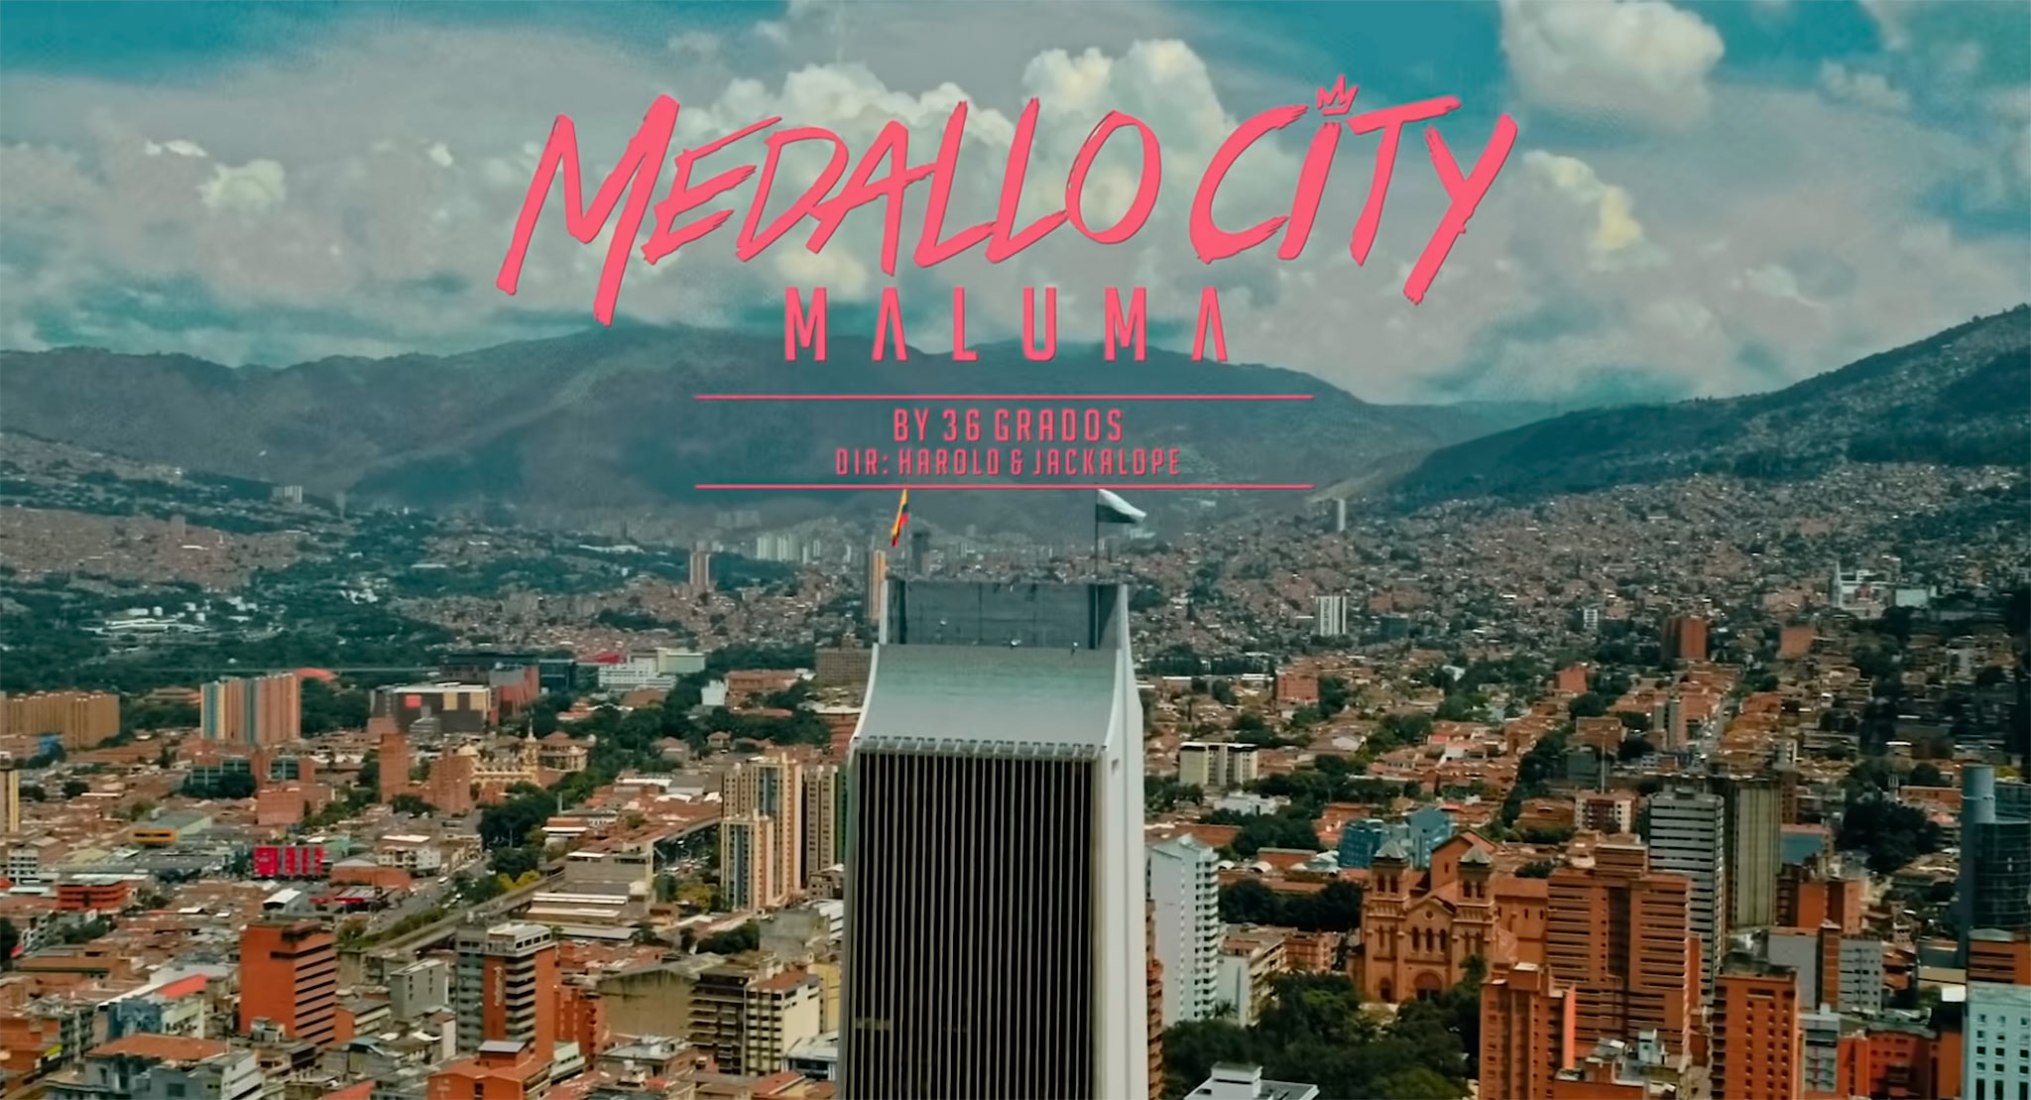 Medallo City by Maluma